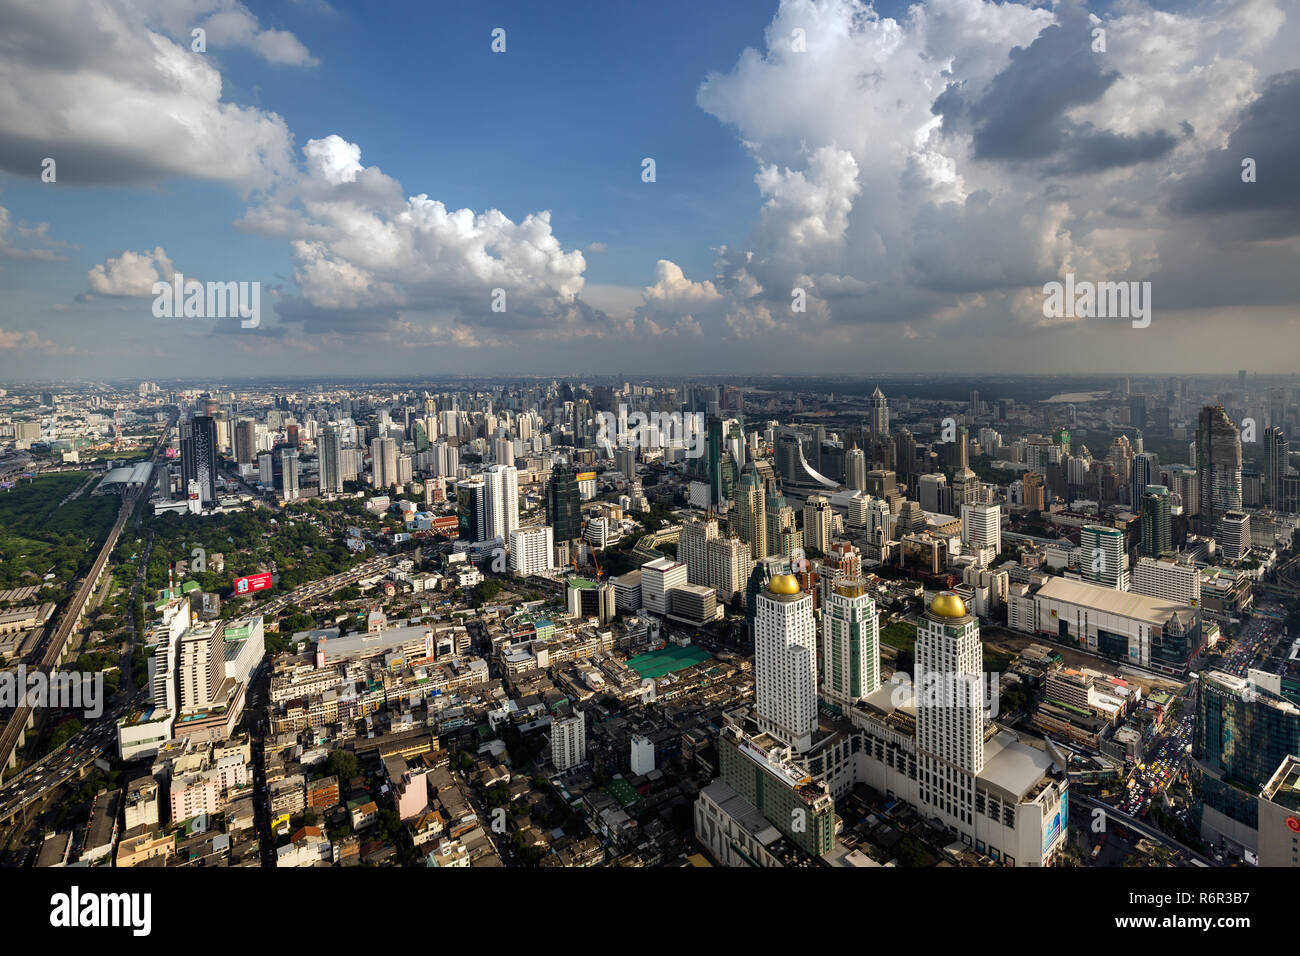 Vue de la ville de la tour Baiyoke, Pratunam Mall, grand centre commercial d'Asie, Bangkok, Thaïlande Banque D'Images